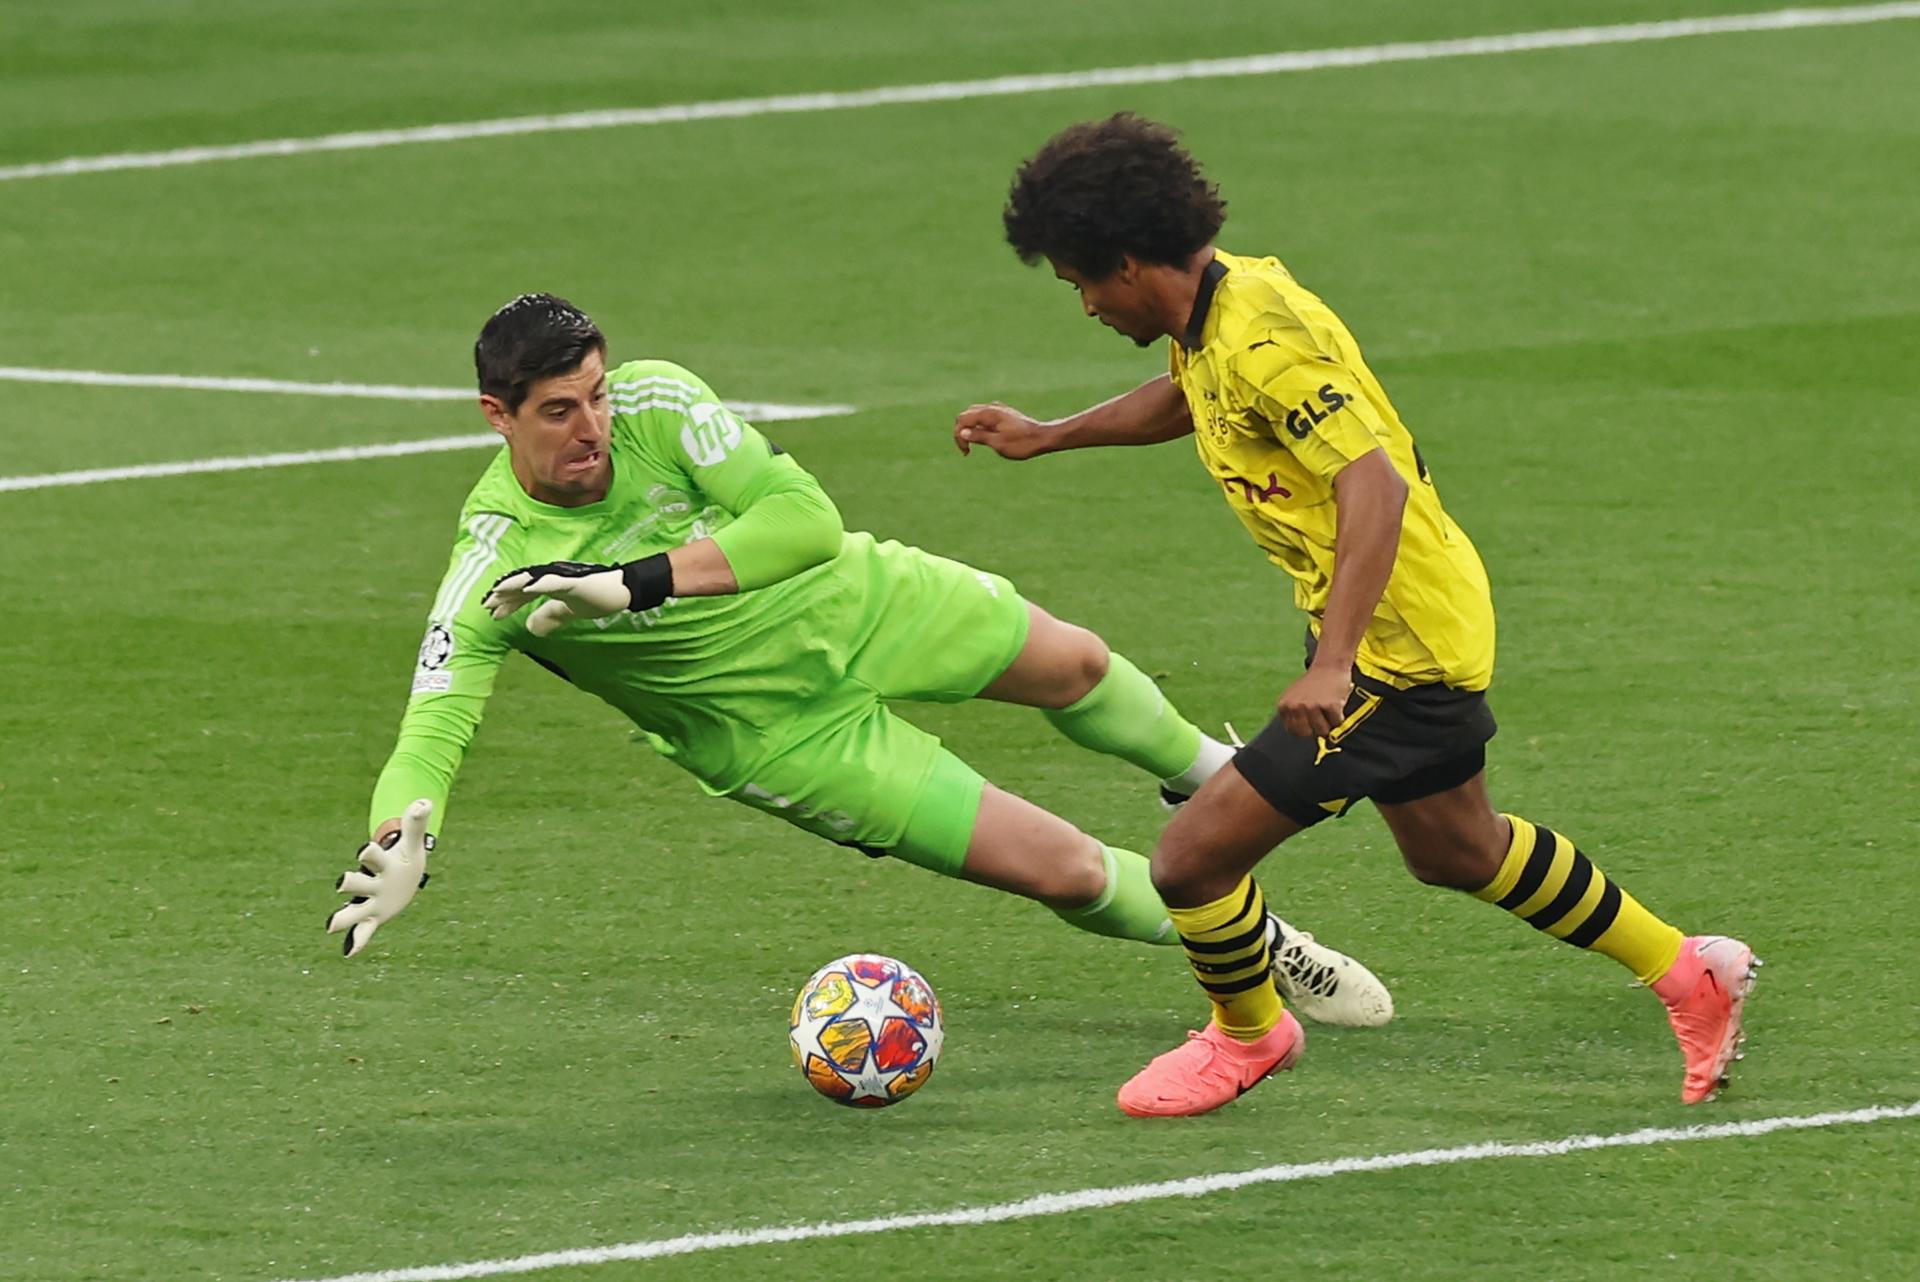 Courtois evitando un gol del Dortmund.